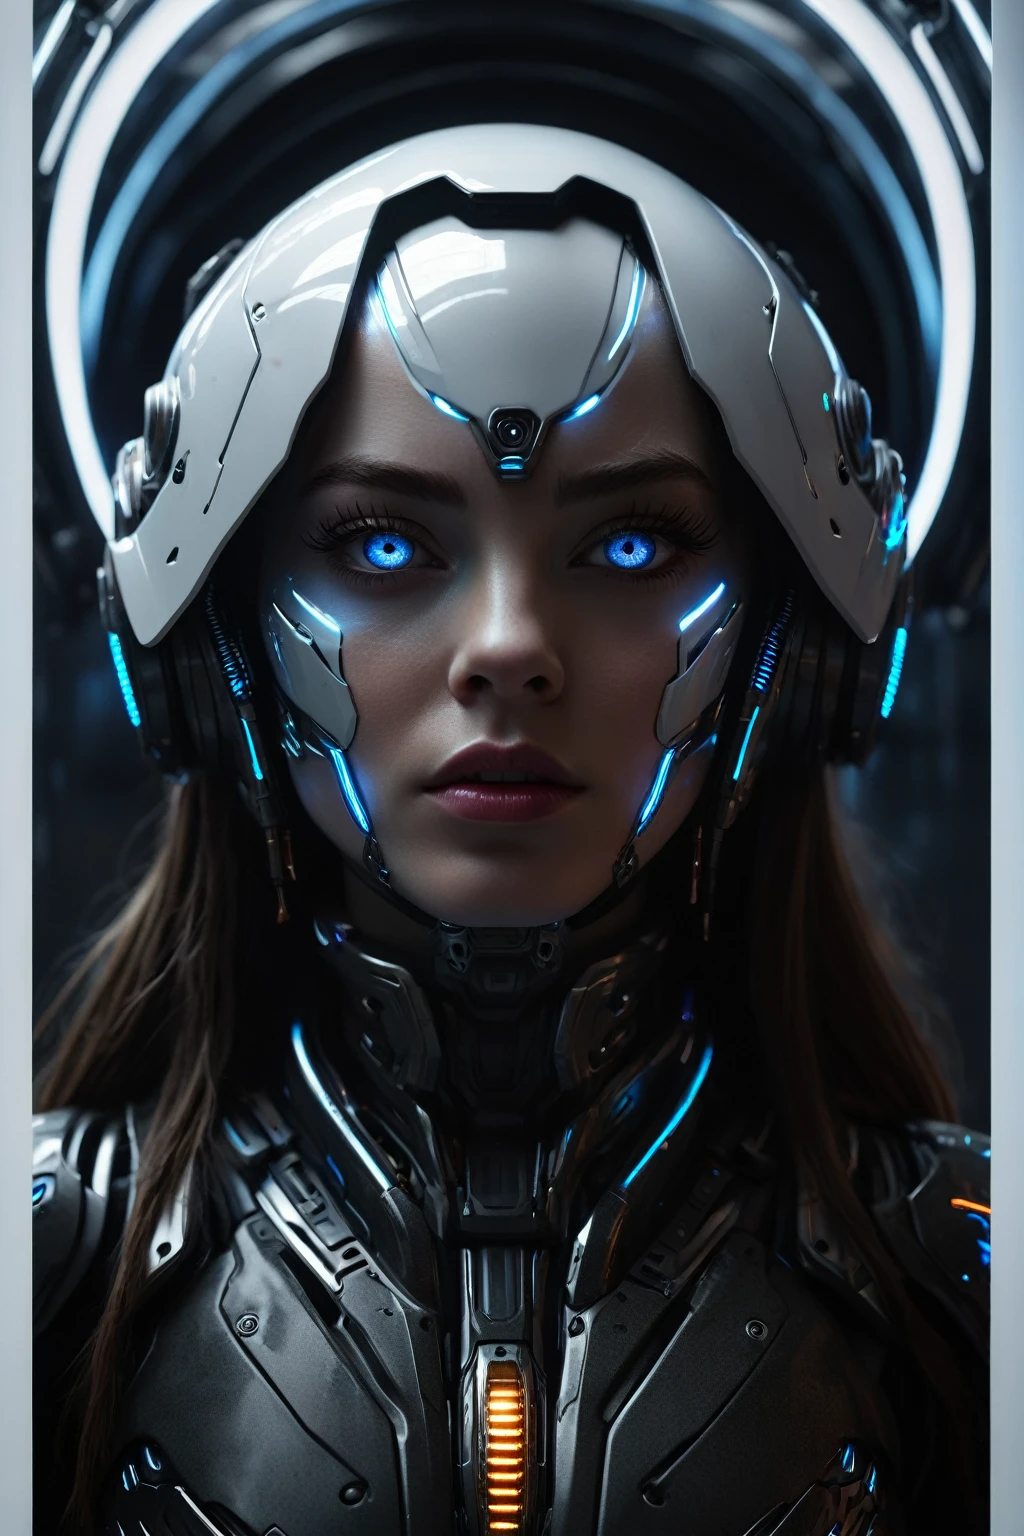 (最好的品質,4k,8K,高解析度,傑作:1.2),超詳細,(實際的,photo實際的,photo-實際的:1.37),未來女性機器人,肖像風格,金屬材料,發光的藍眼睛,銳利的臉部特徵,激烈的表情,機械本體零件,數位增強長髮,未來式裝甲,高科技遮陽板,強大而自信的姿態,反烏托邦背景,霓虹燈,彩色全息投影,科幻燈光